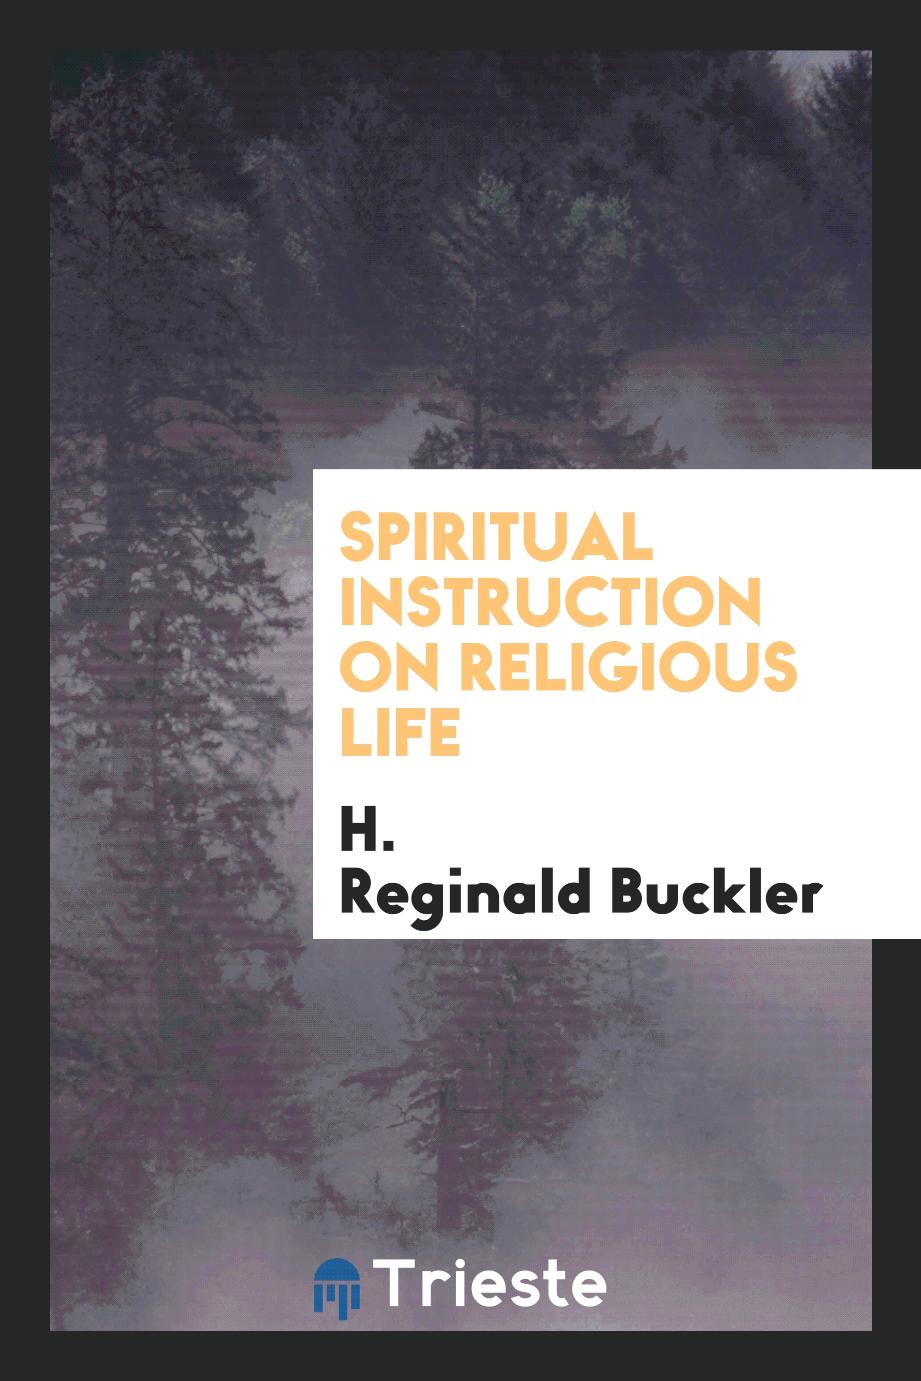 Spiritual instruction on religious life